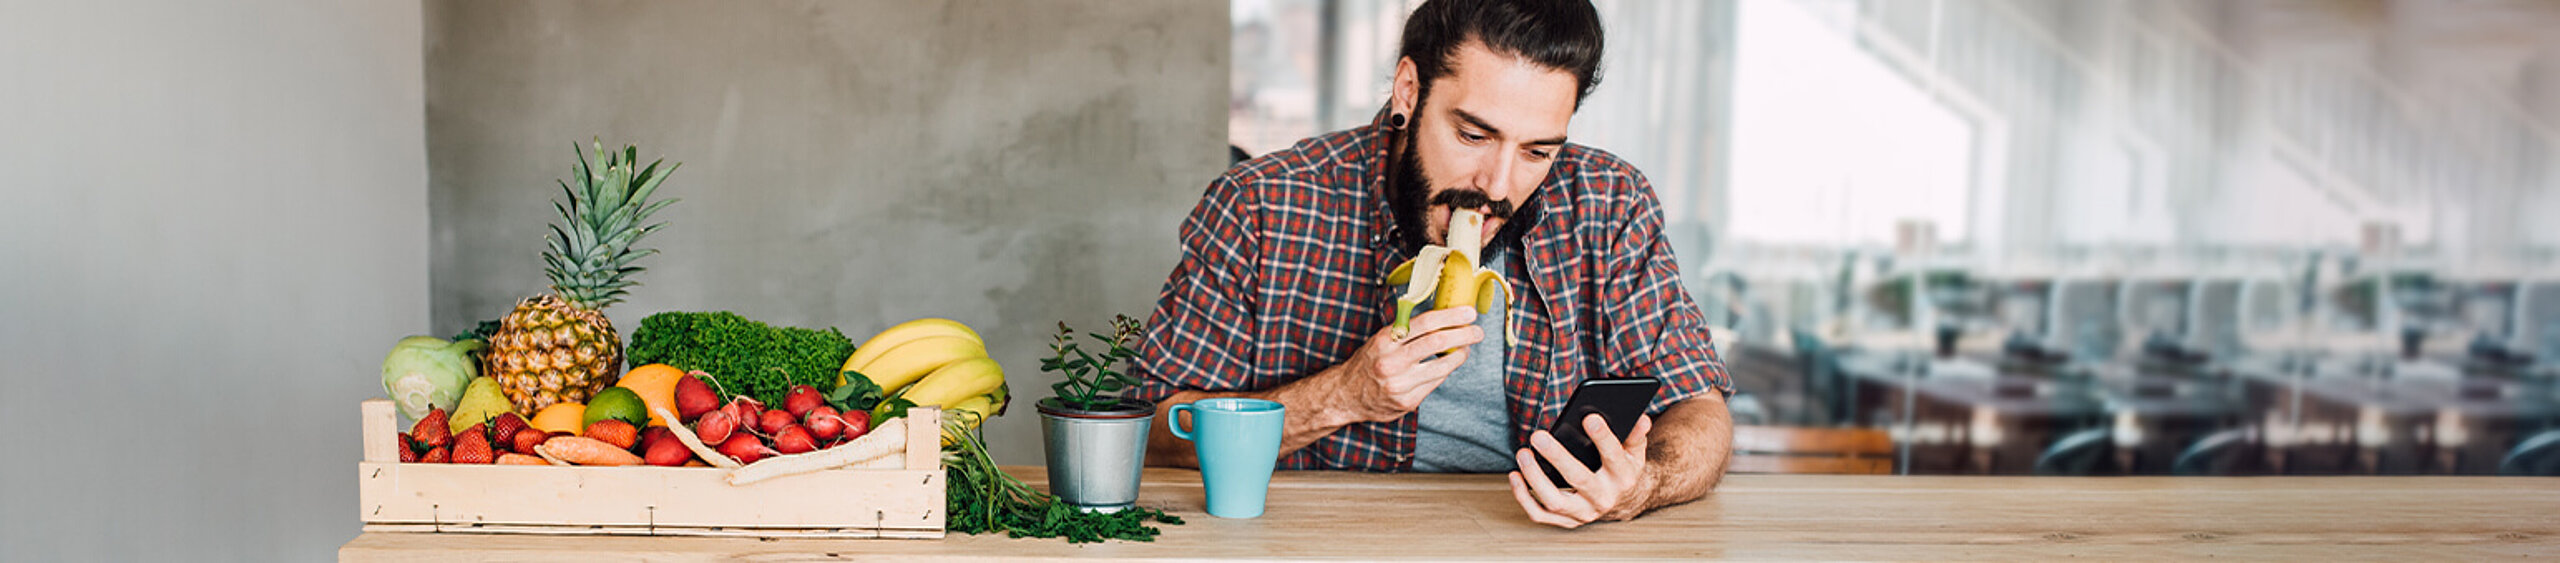 Mann sitzt neben Obstkorb und isst einen Banane